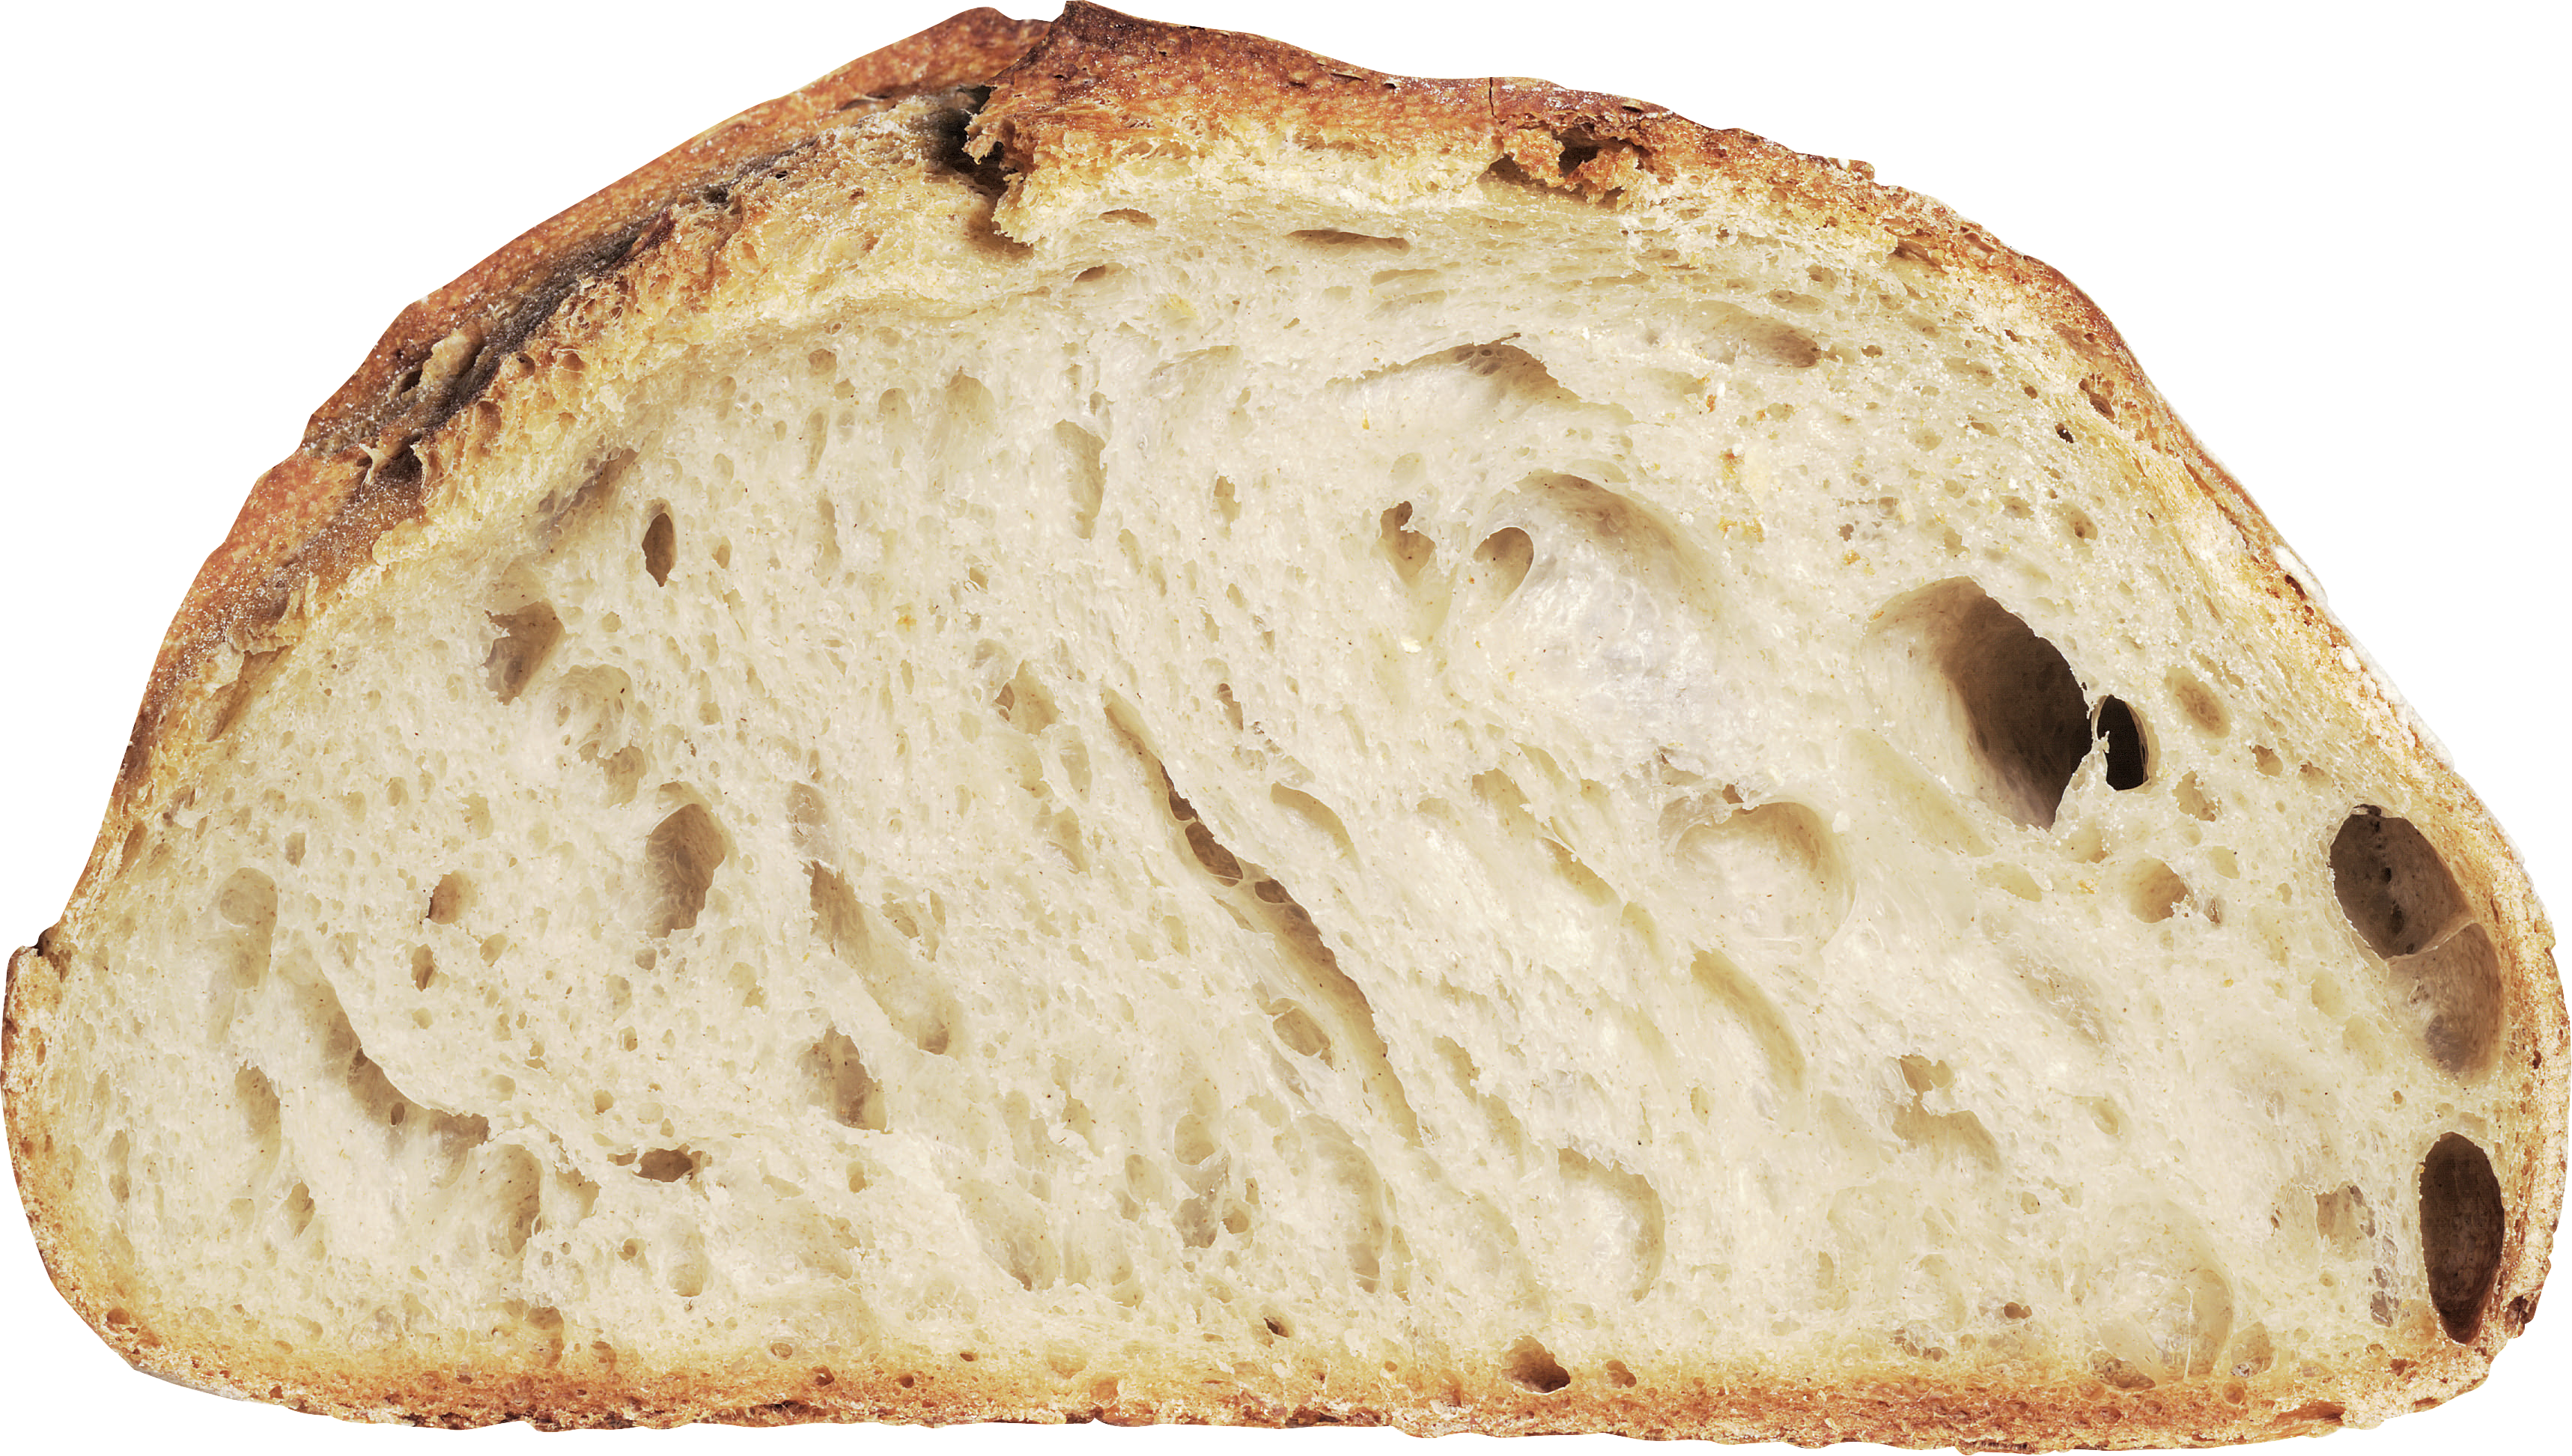 Bánh mì trắng